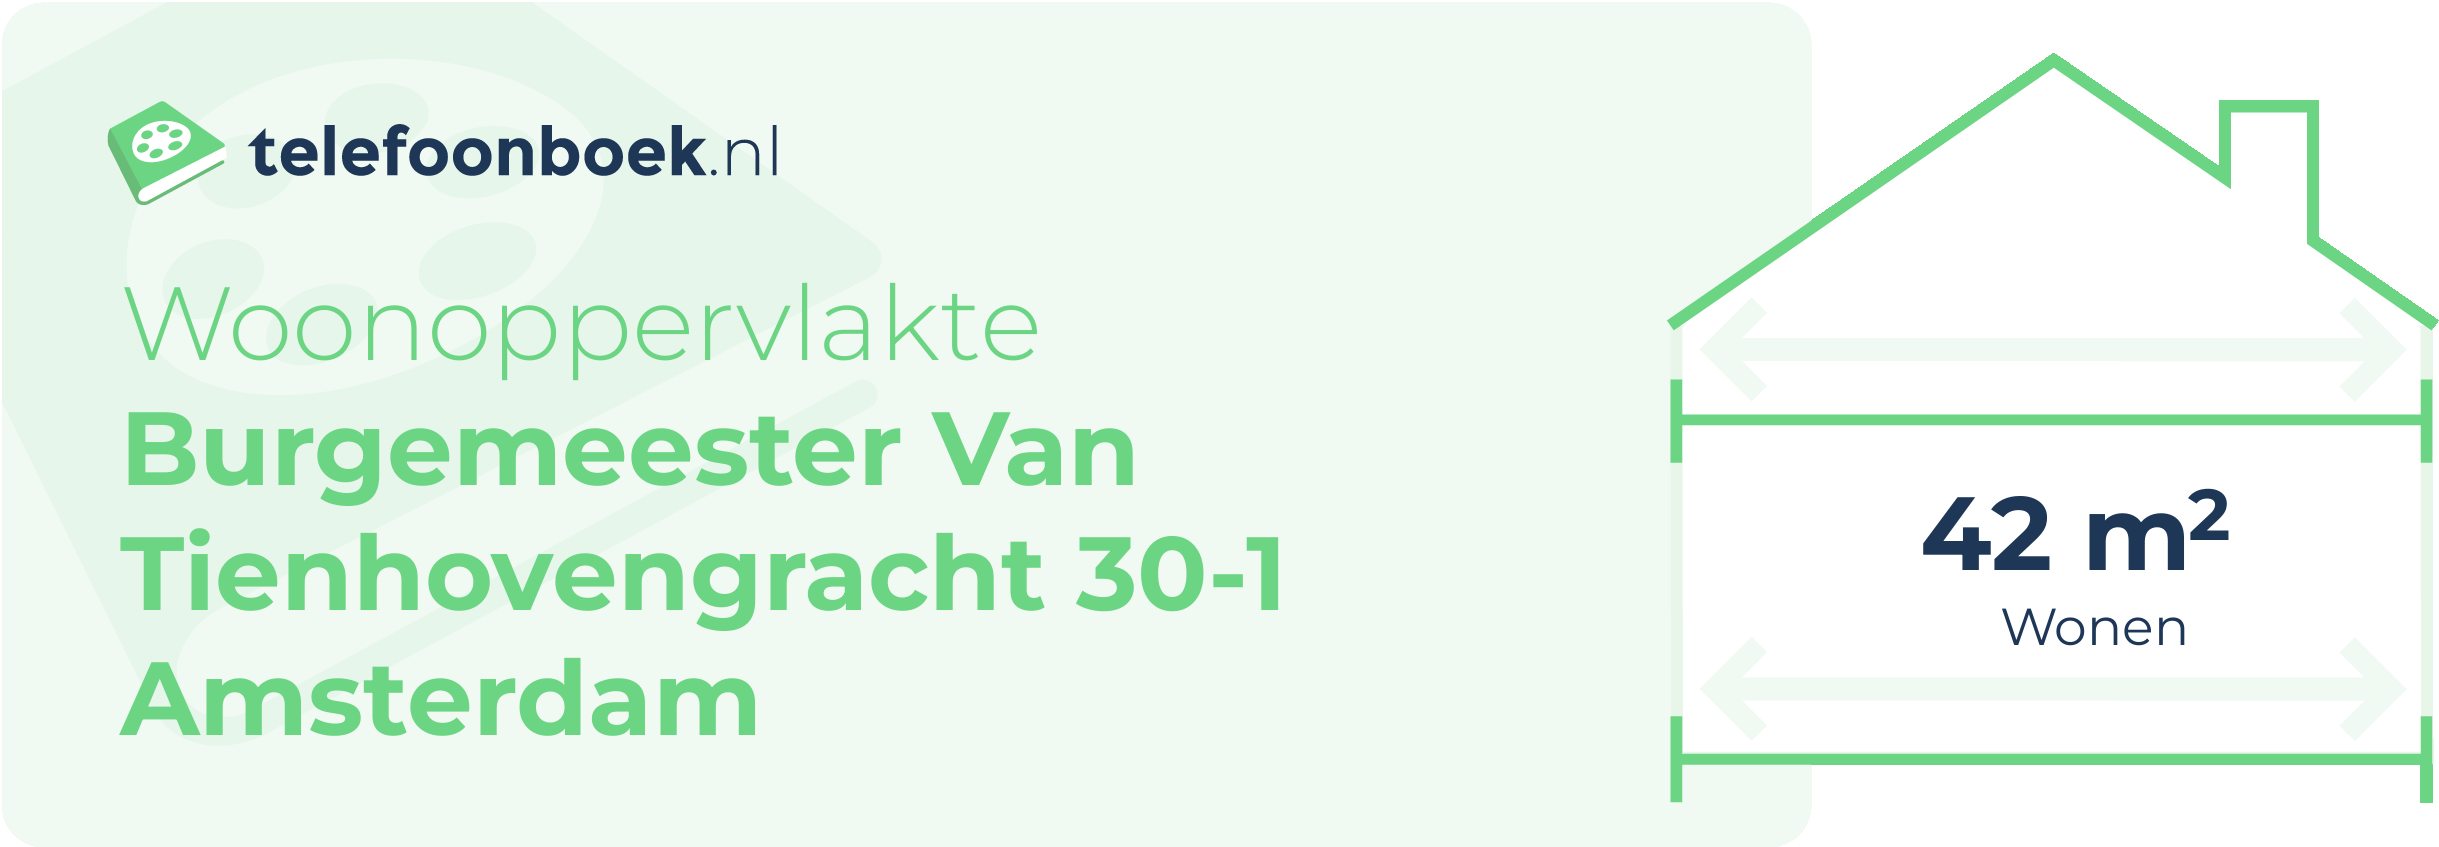 Woonoppervlakte Burgemeester Van Tienhovengracht 30-1 Amsterdam